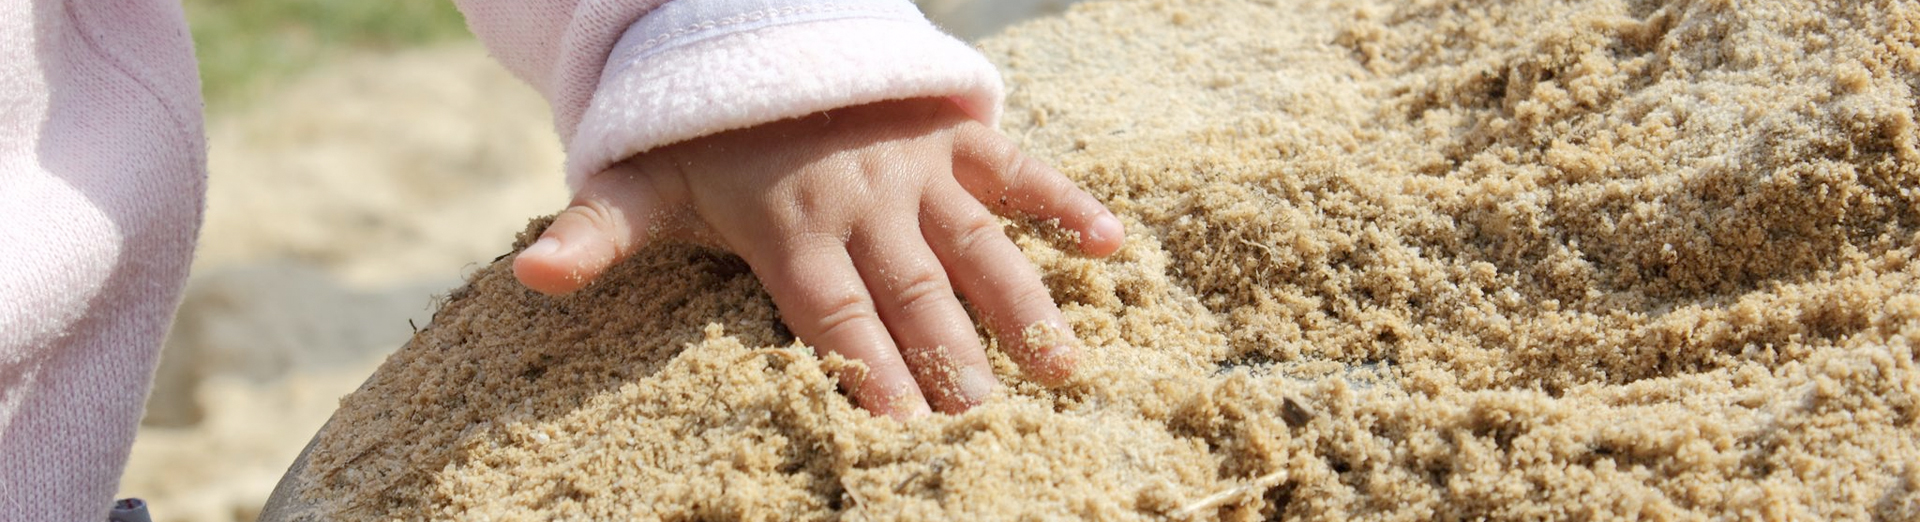 Kleine Kinderhände spielen im Sand